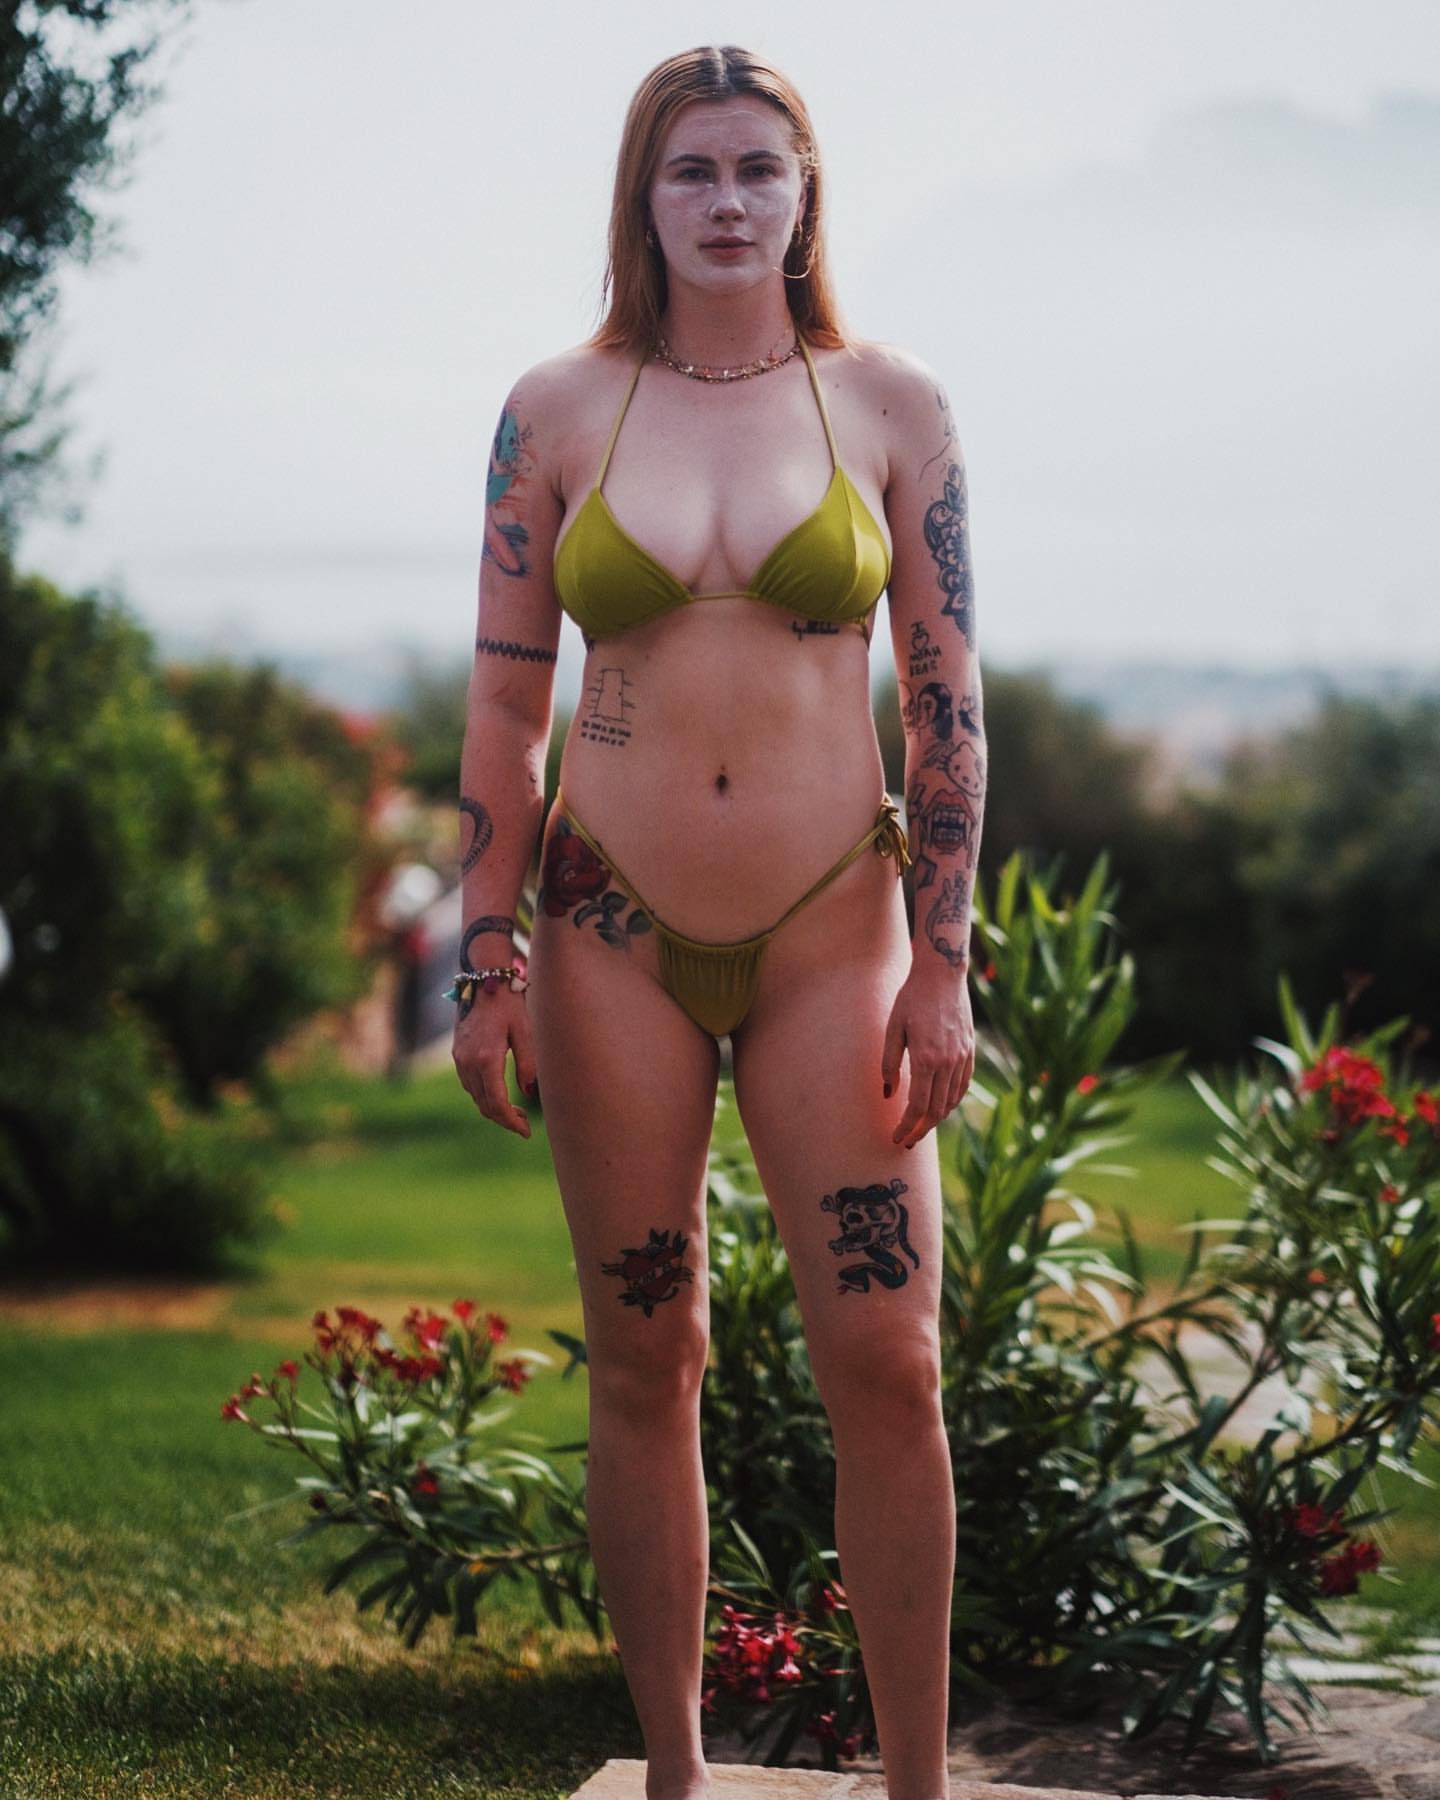 Ireland Baldwin’s Baby Bumpin’ in A Bikini! - Photo 13